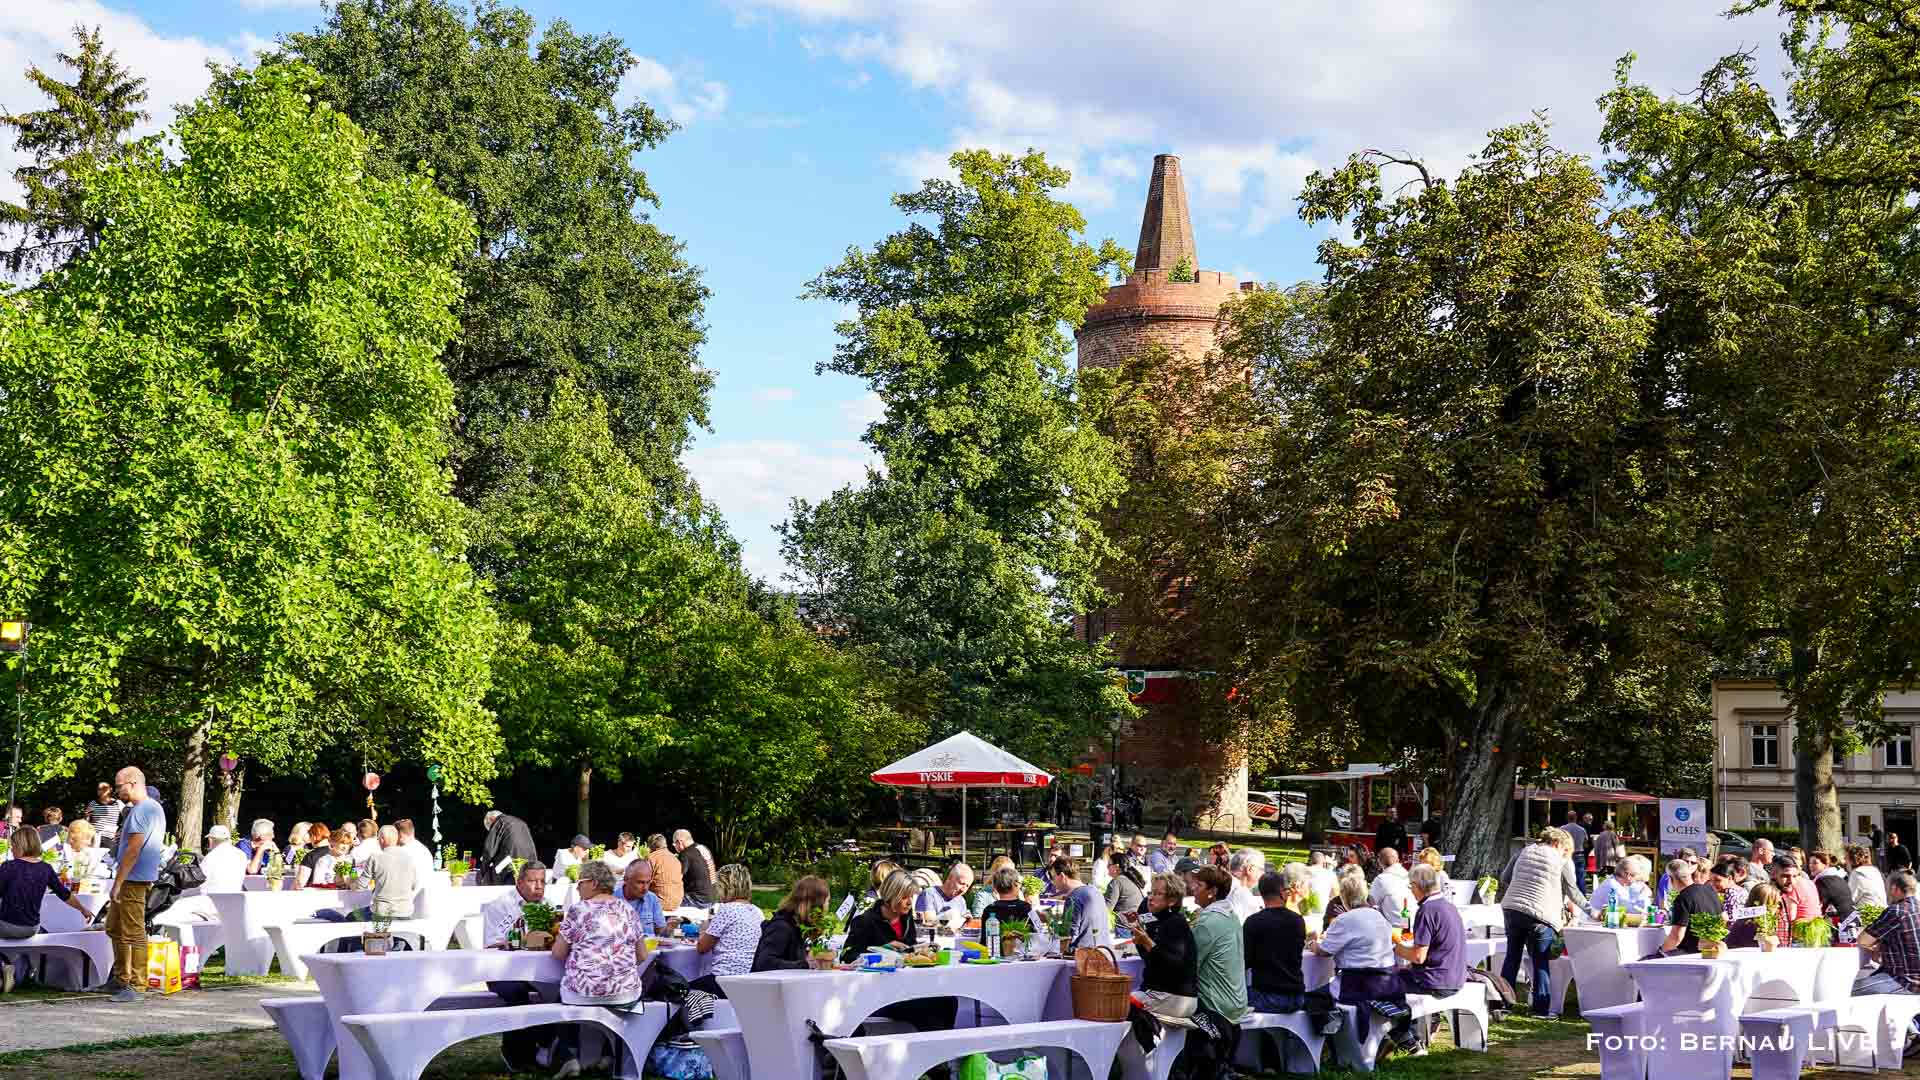 Dinner-Picknick im Stadtpark Bernau: Infos, Programm, reservierte Plätze